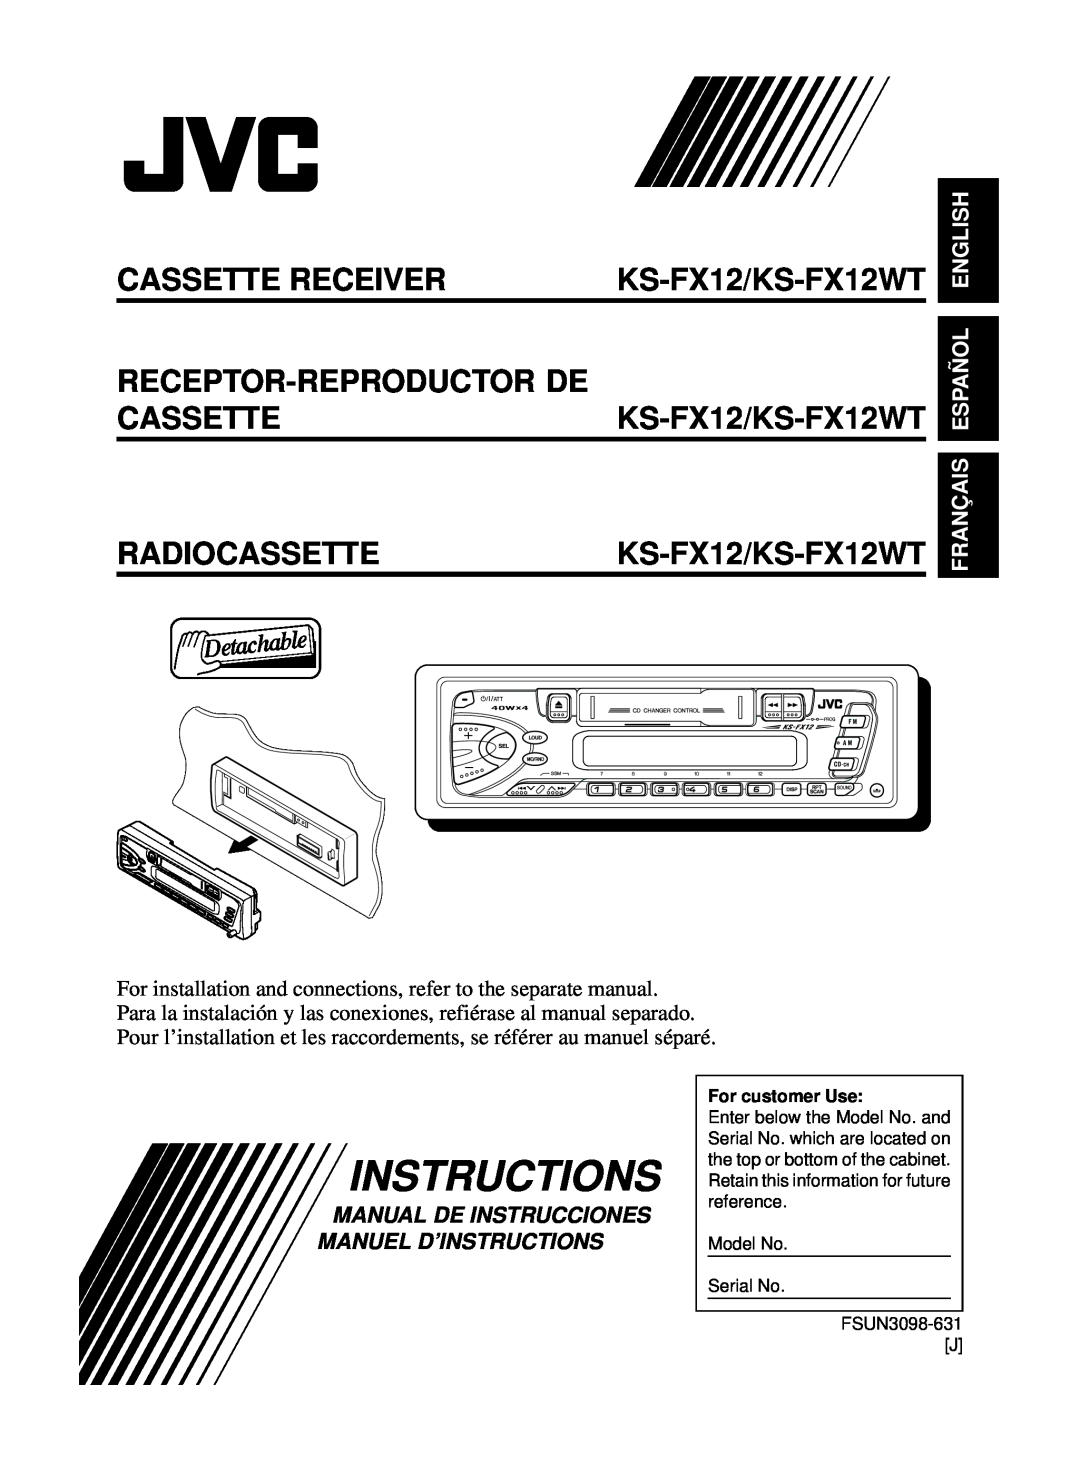 JVC manual Instructions, English, Français Español, Cassette Receiver, KS-FX12/KS-FX12WT, Receptor-Reproductor De 